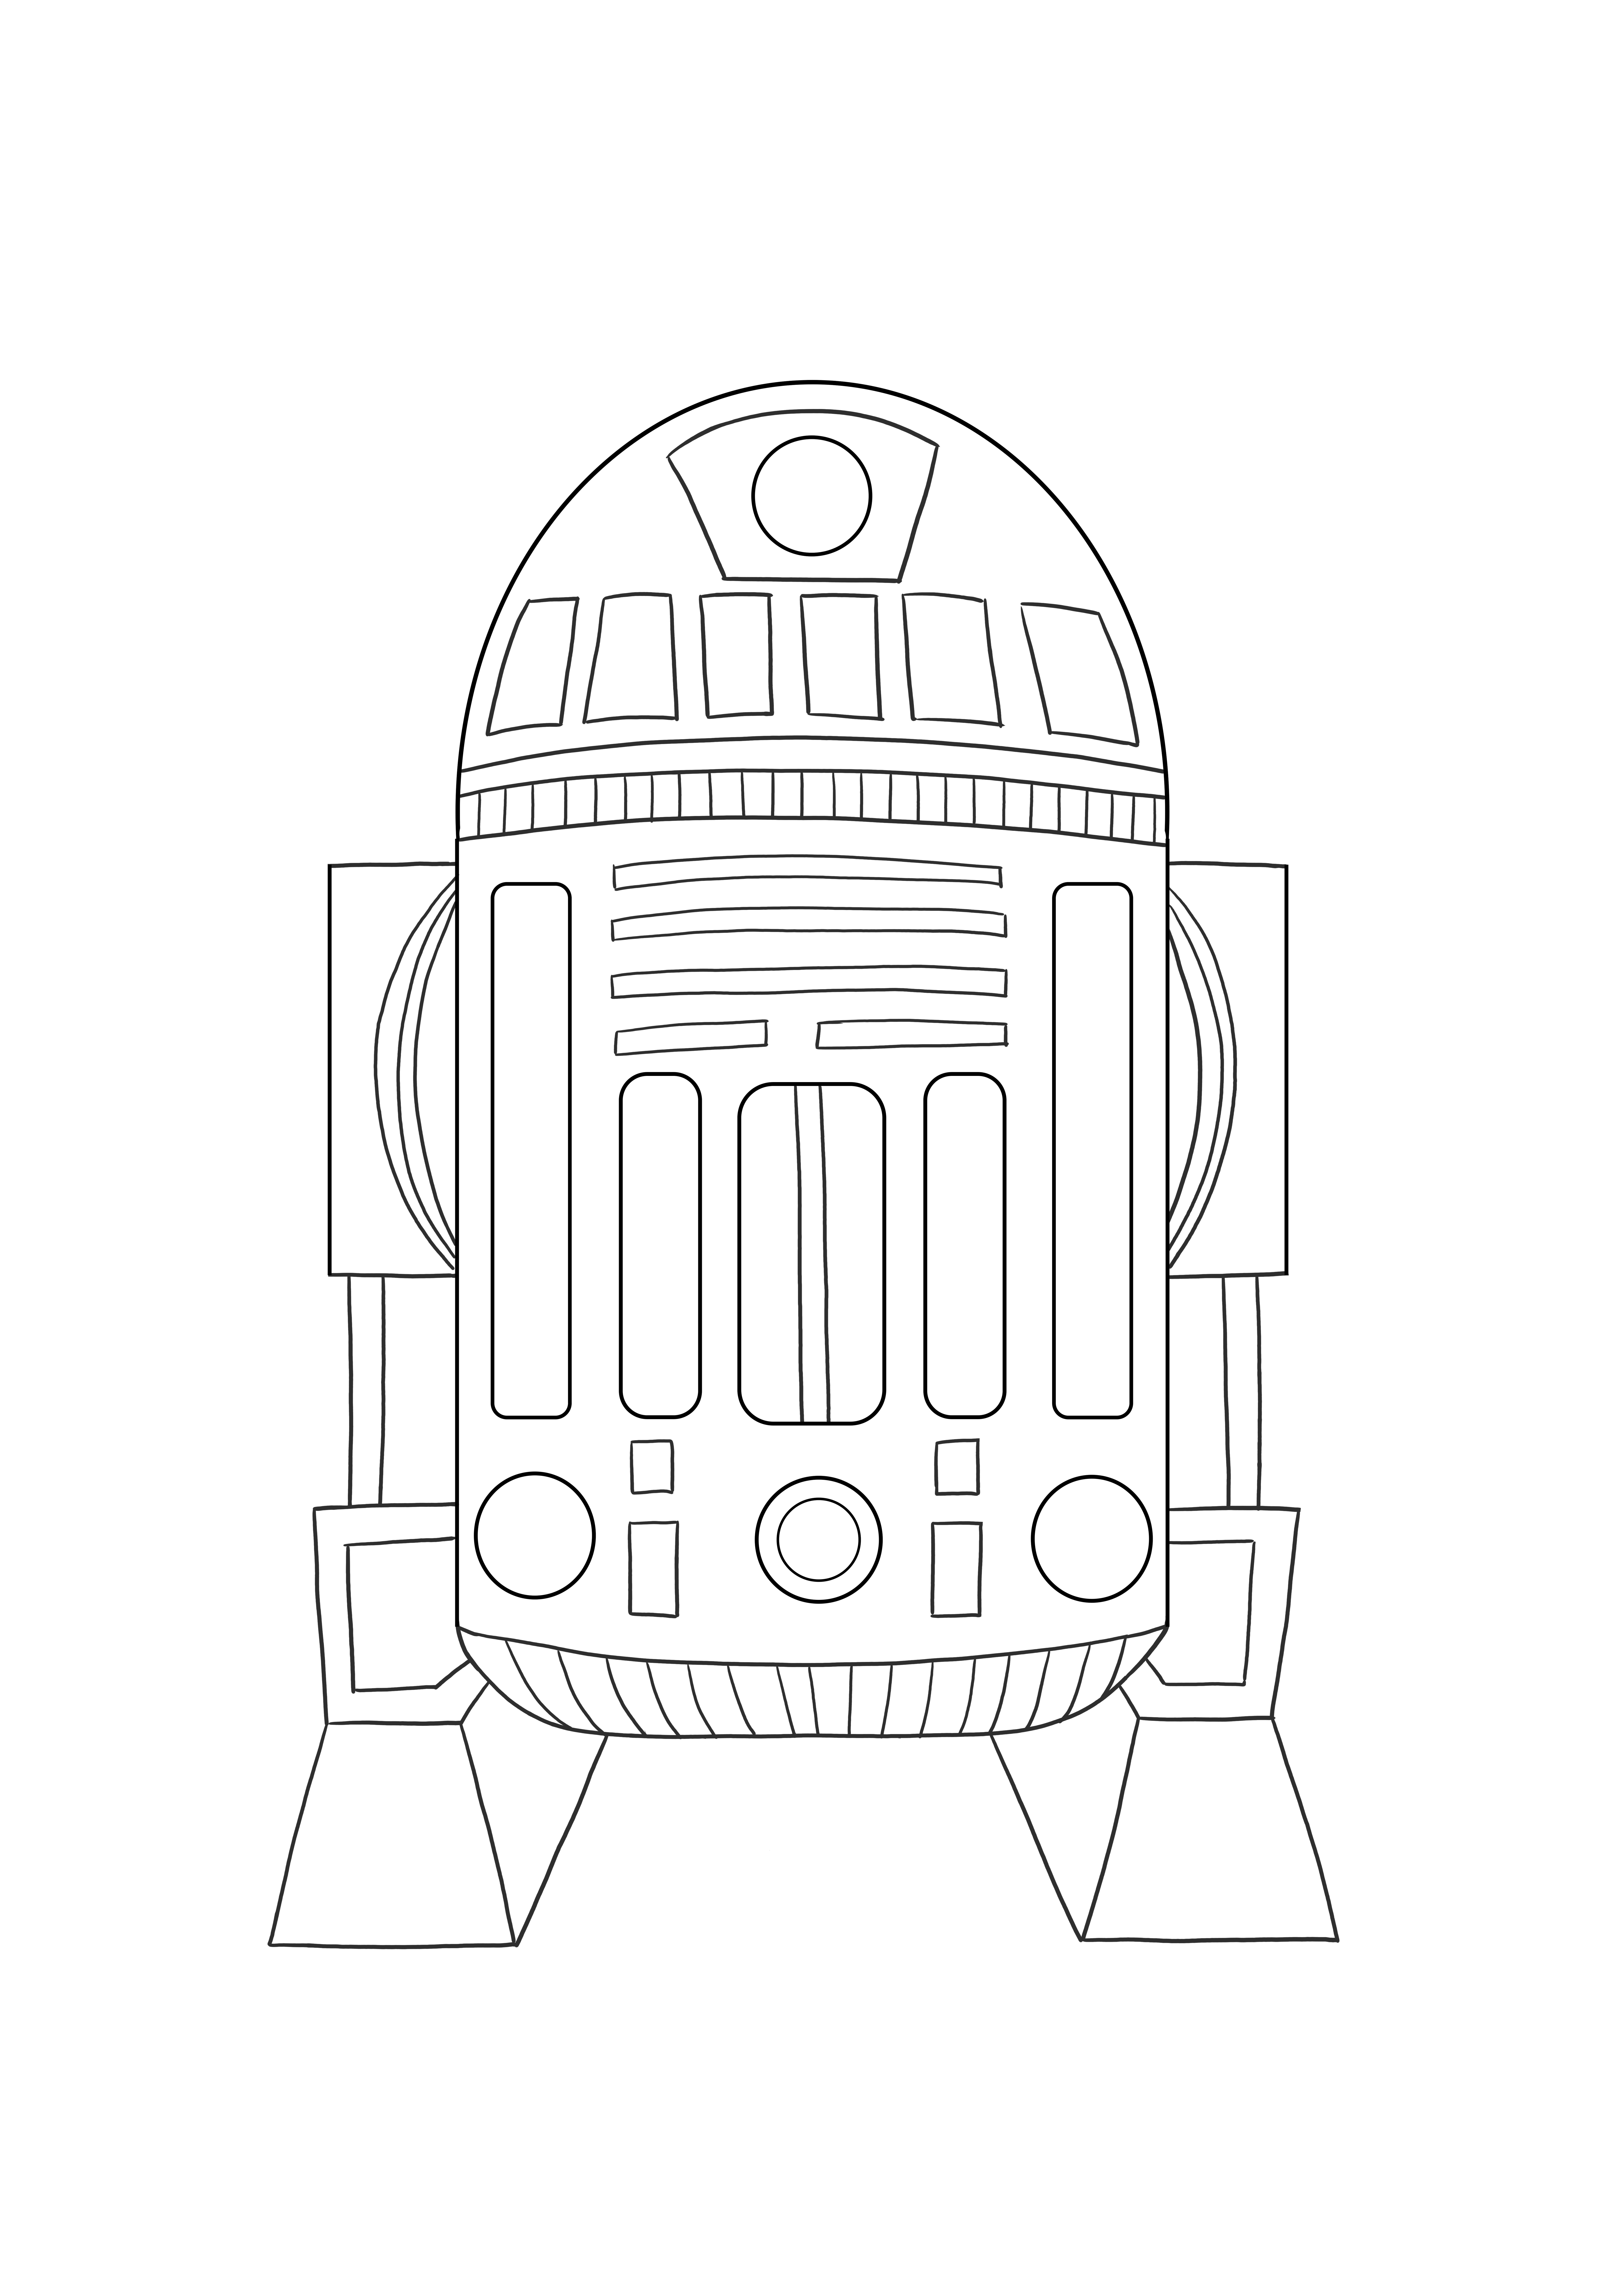 Astromed droid R2 gambar yang dapat dicetak gratis untuk diwarnai untuk anak-anak